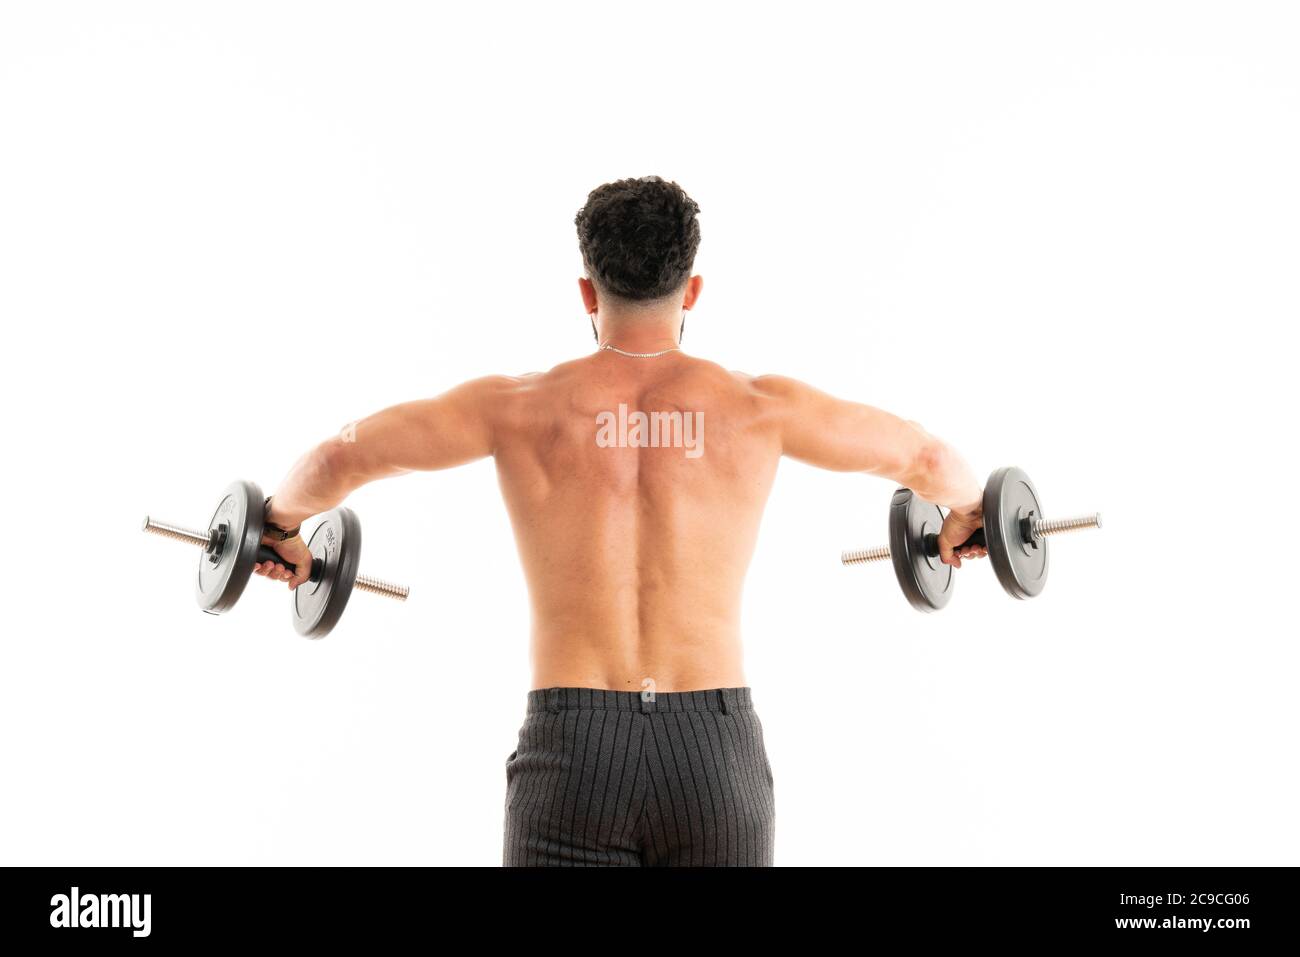 Uomo atletico che mostra corpo muscolare con manubri, vista posteriore, lunghezza intera, isolato su sfondo bianco Foto Stock